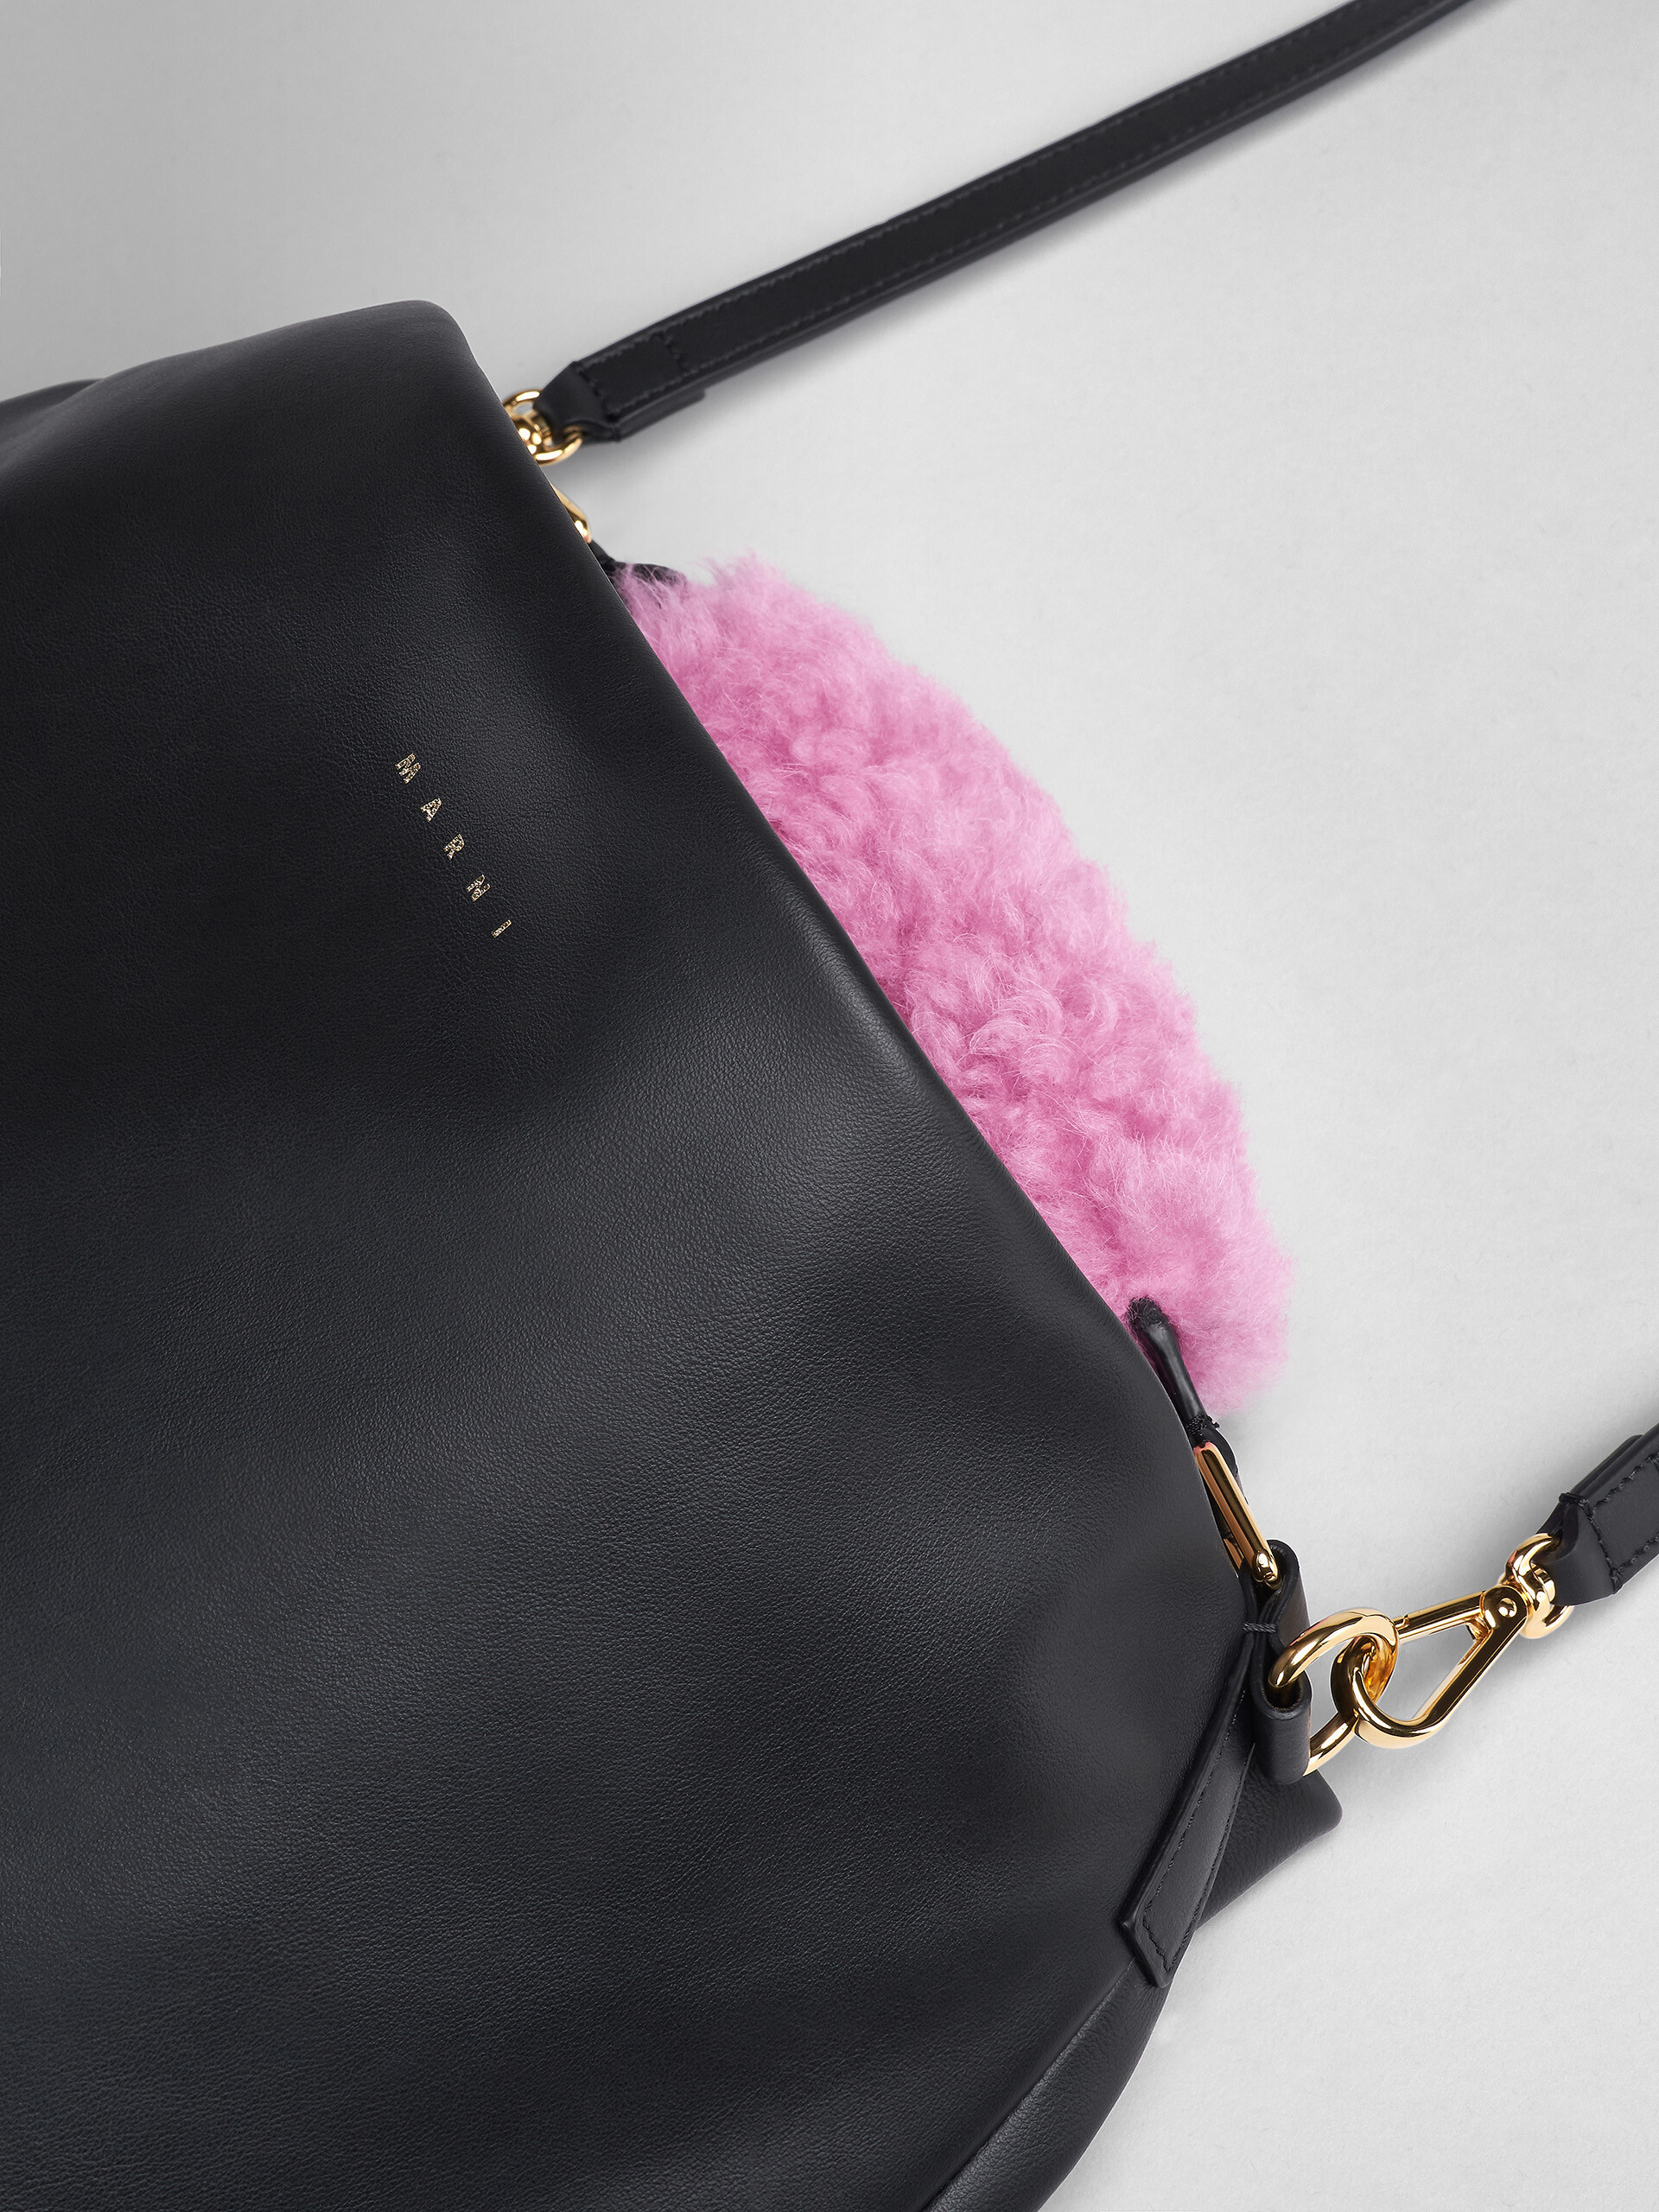 Venice medium bag in black leather - Shoulder Bag - Image 5